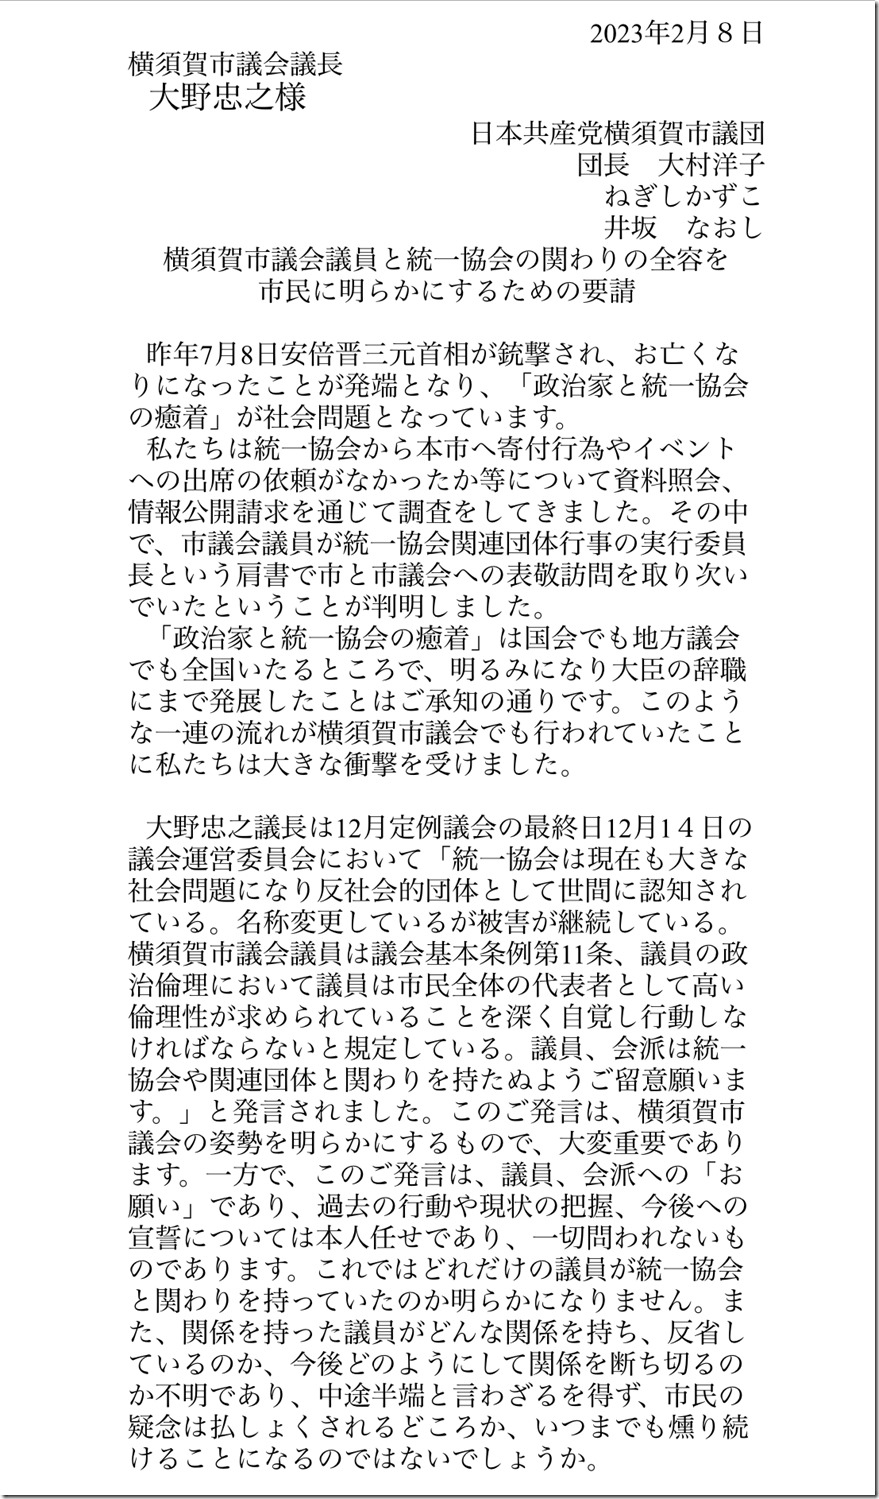 横須賀市議会議員と統一協会の関わりの全容を市民に明らかにするための要請2023・2・8(一枚目)